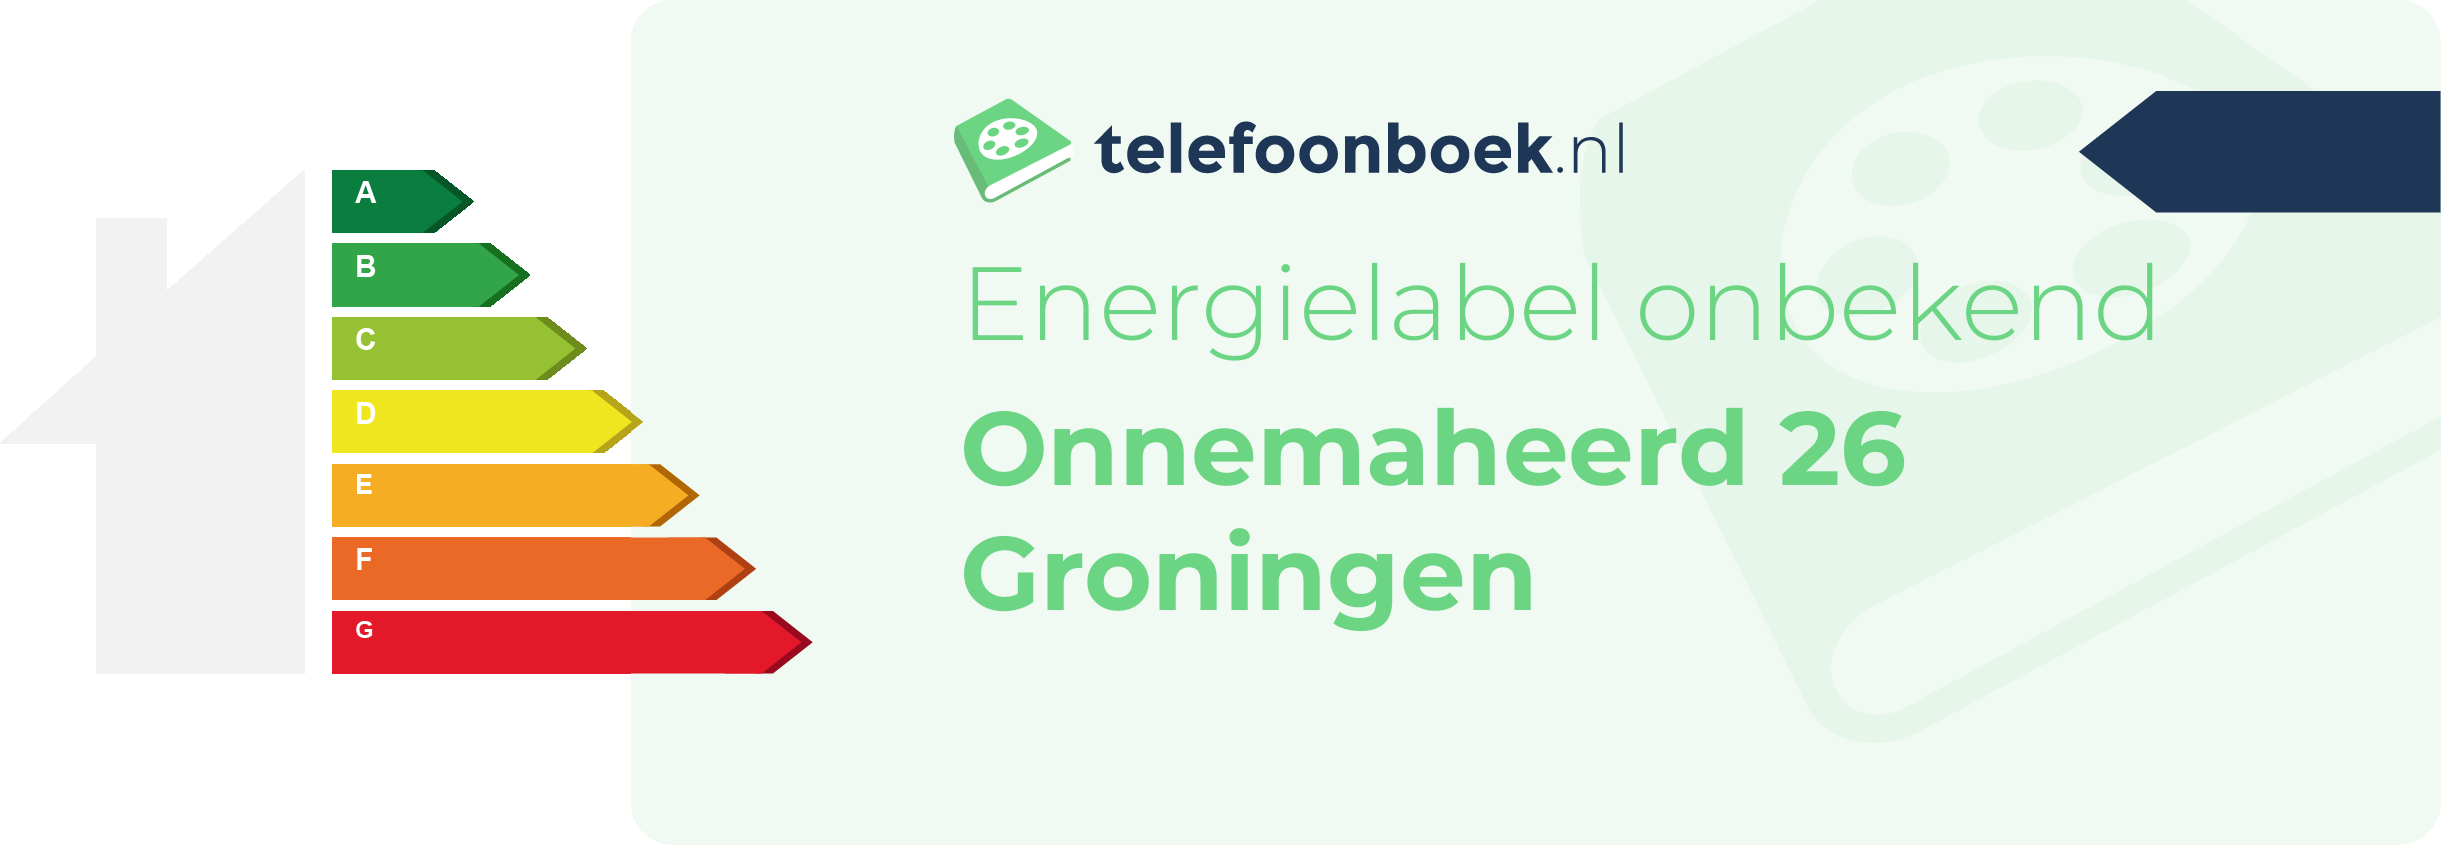 Energielabel Onnemaheerd 26 Groningen